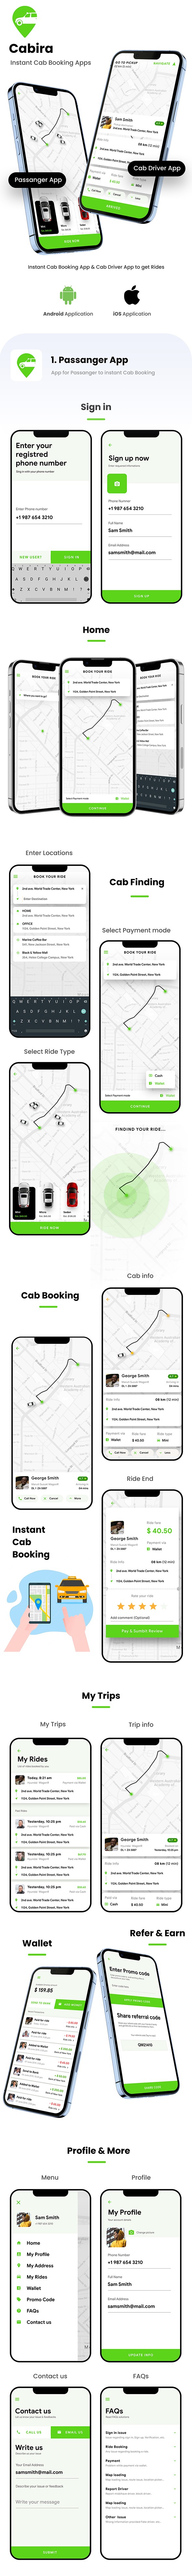 Taksi Rezervasyonu Android + iOS Uygulama Şablonu | 2 Uygulama Yolcu + Sürücü | Cabira | Çarpıntı - 3